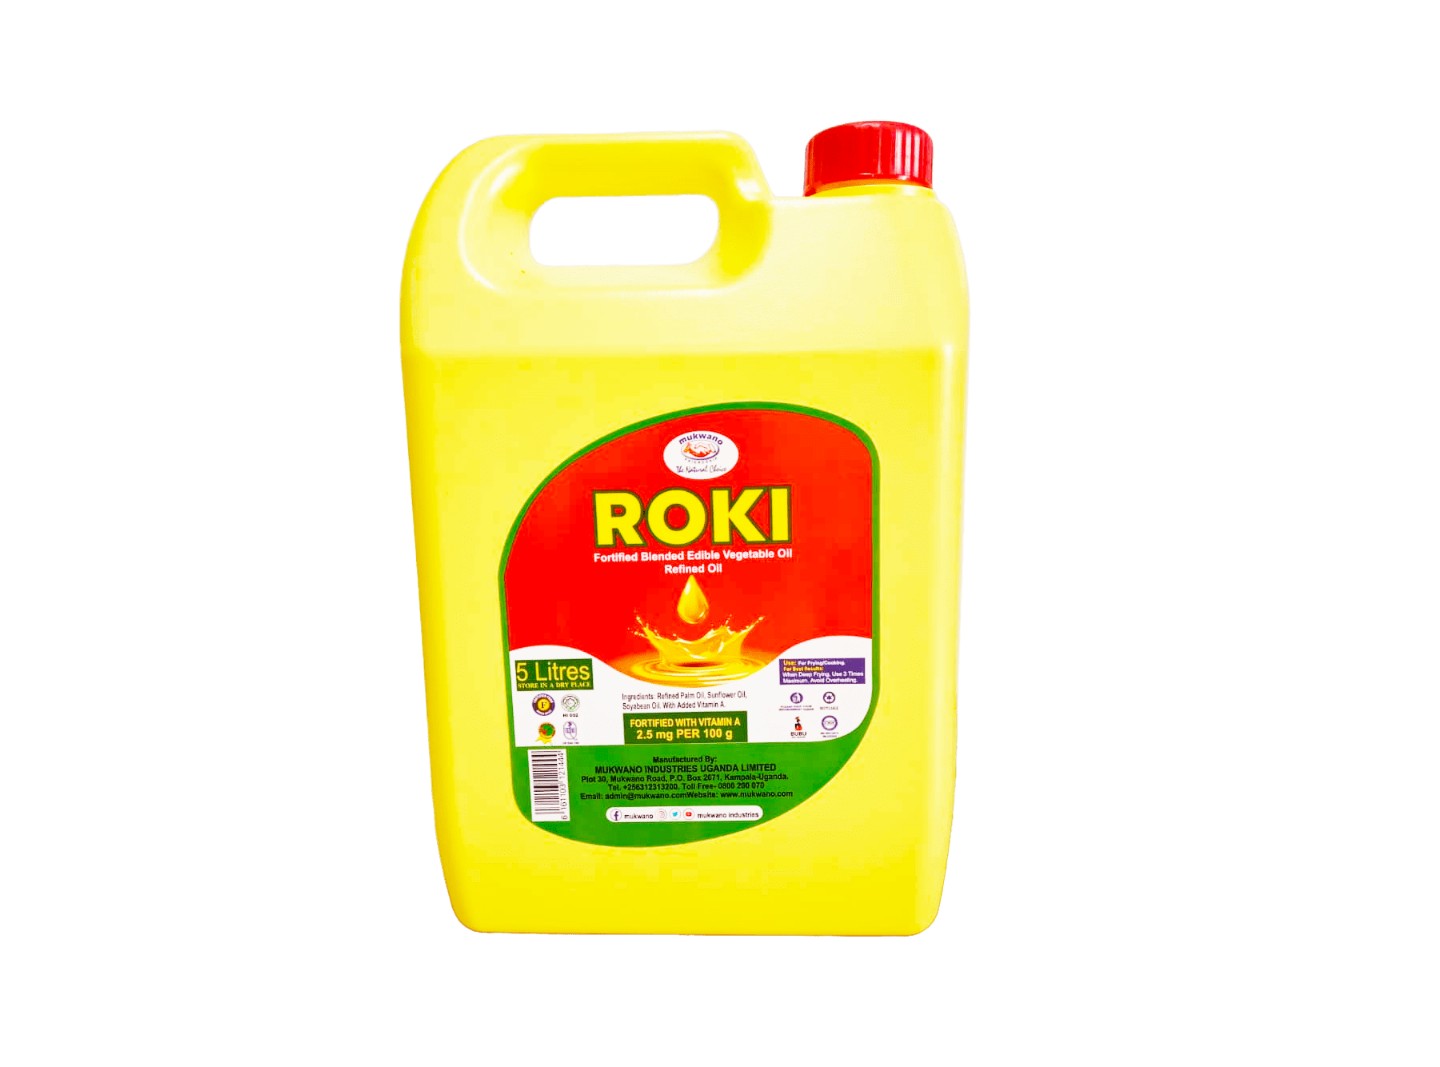 ROKI VEGETABLE
COOKING OIL 5 L